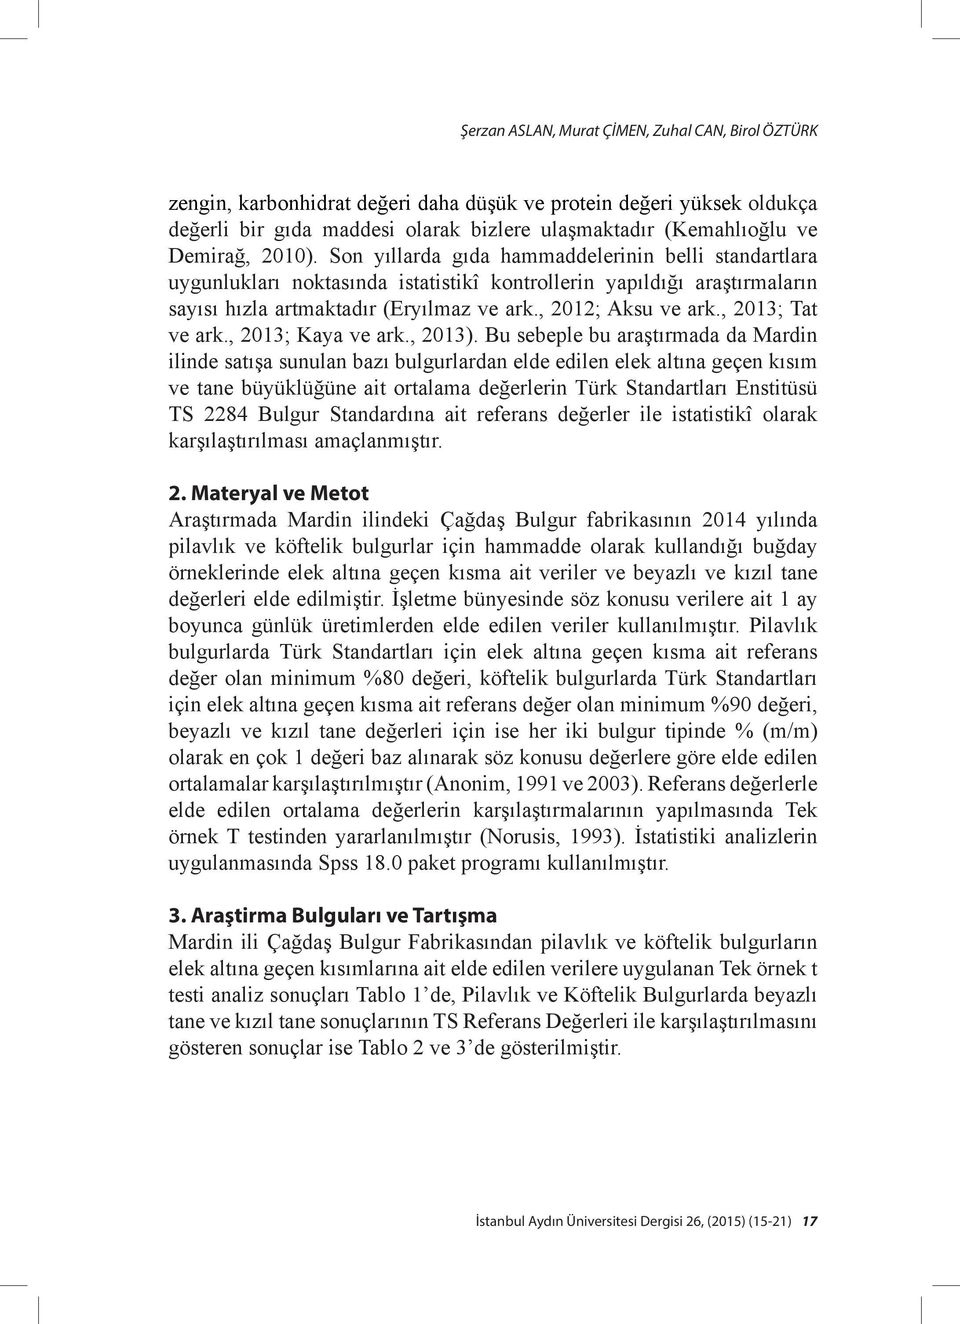 , 2012; Aksu ve ark., 2013; Tat ve ark., 2013; Kaya ve ark., 2013).